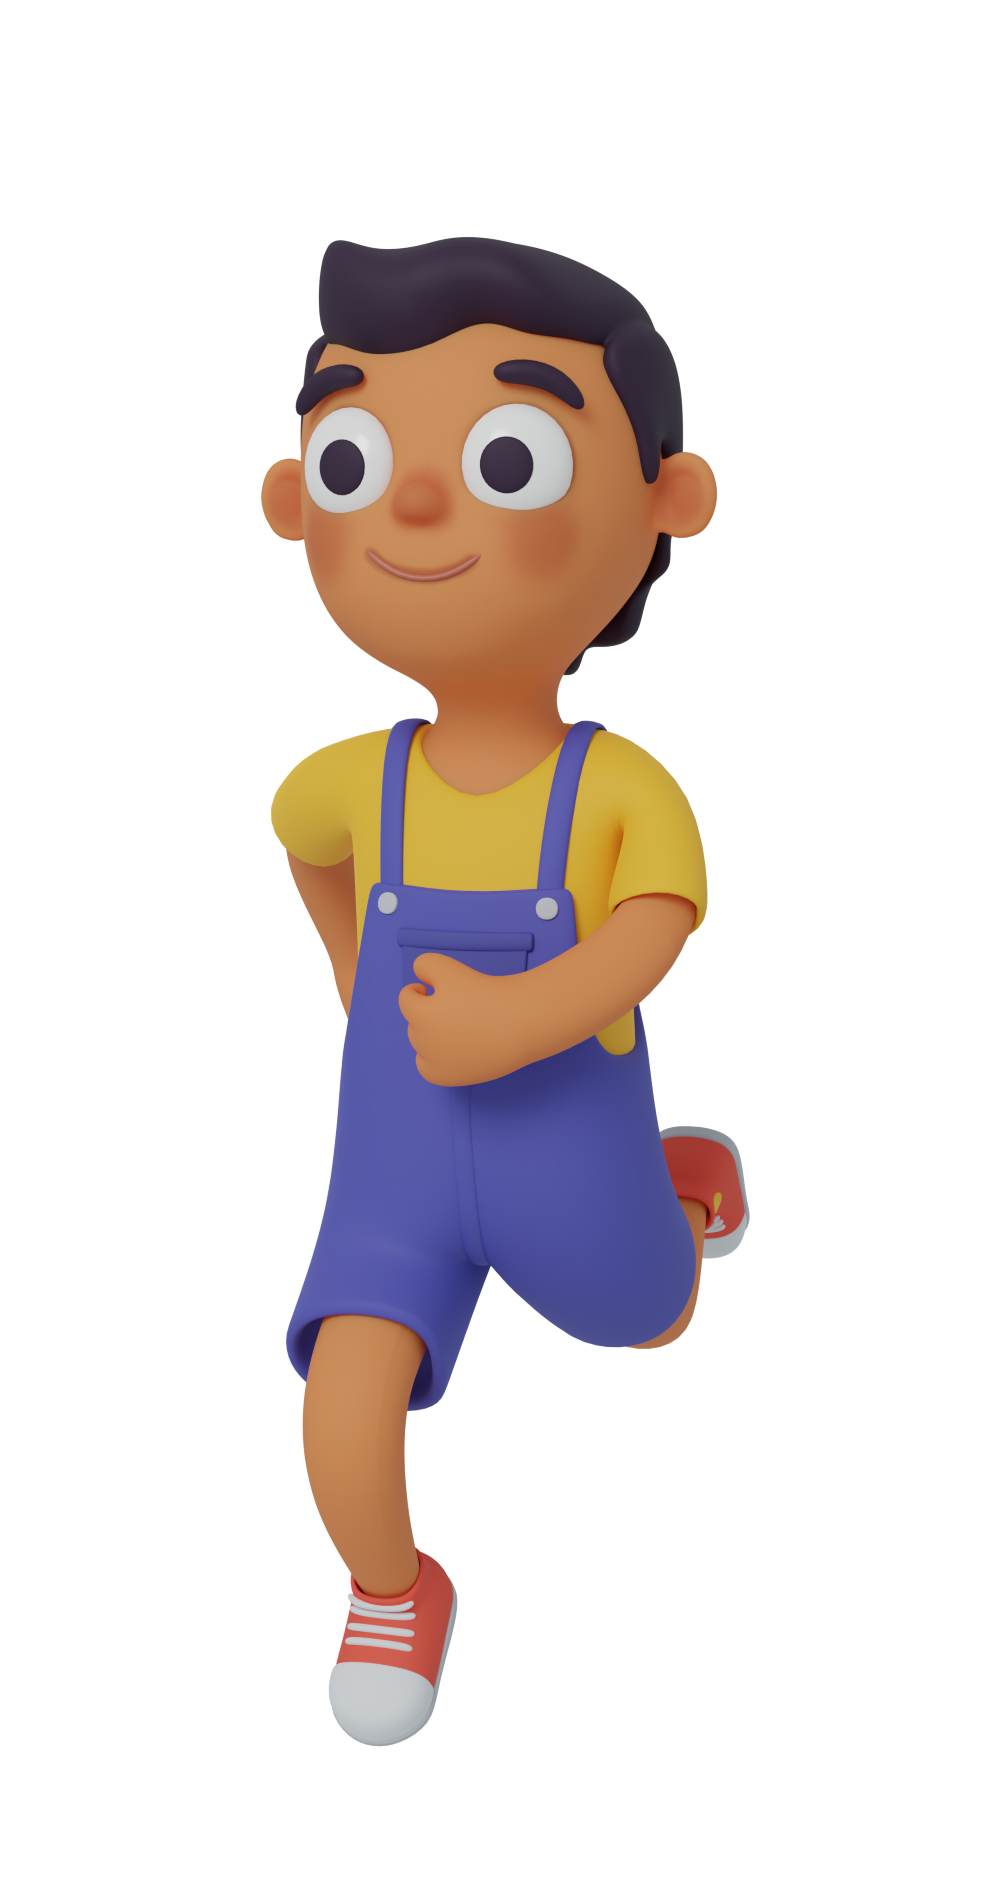 3d character design of a boy running